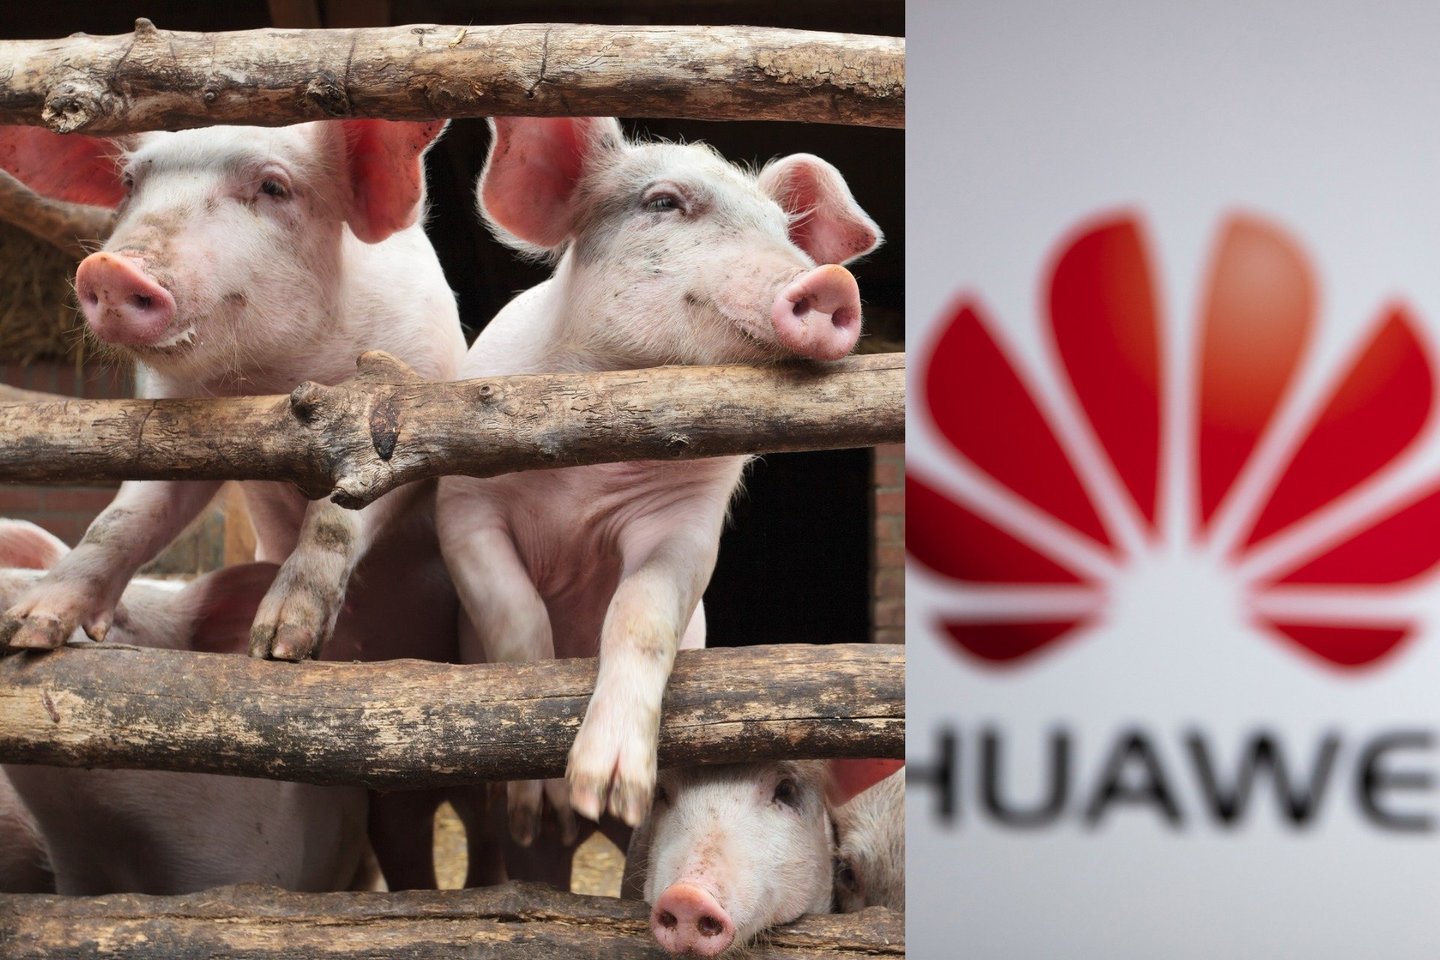  „Huawei“ susiduriant su stipriomis sankcijomis prekybai išmaniaisiais telefonais, kompanija atsigręžia į kiaulininkystės technologijas.<br> 123rf nuotr.